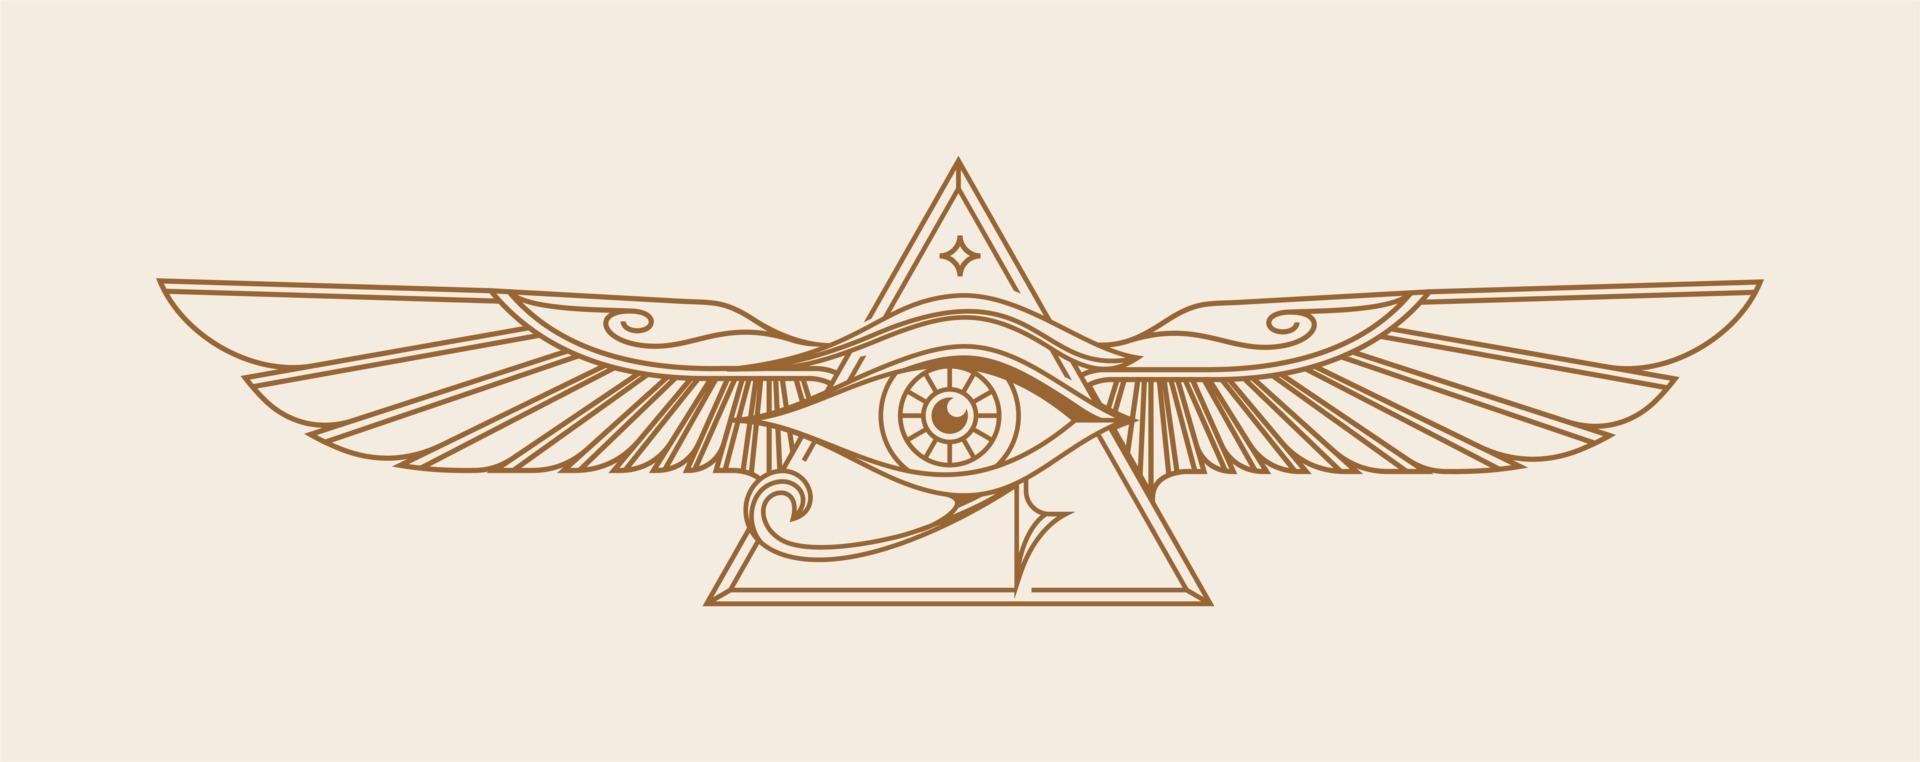 horus med vingar vektor. gammal egypten årgång konst hipster linje konst illustration vektor med öga av horus med helig scarab vingar vägg konst design